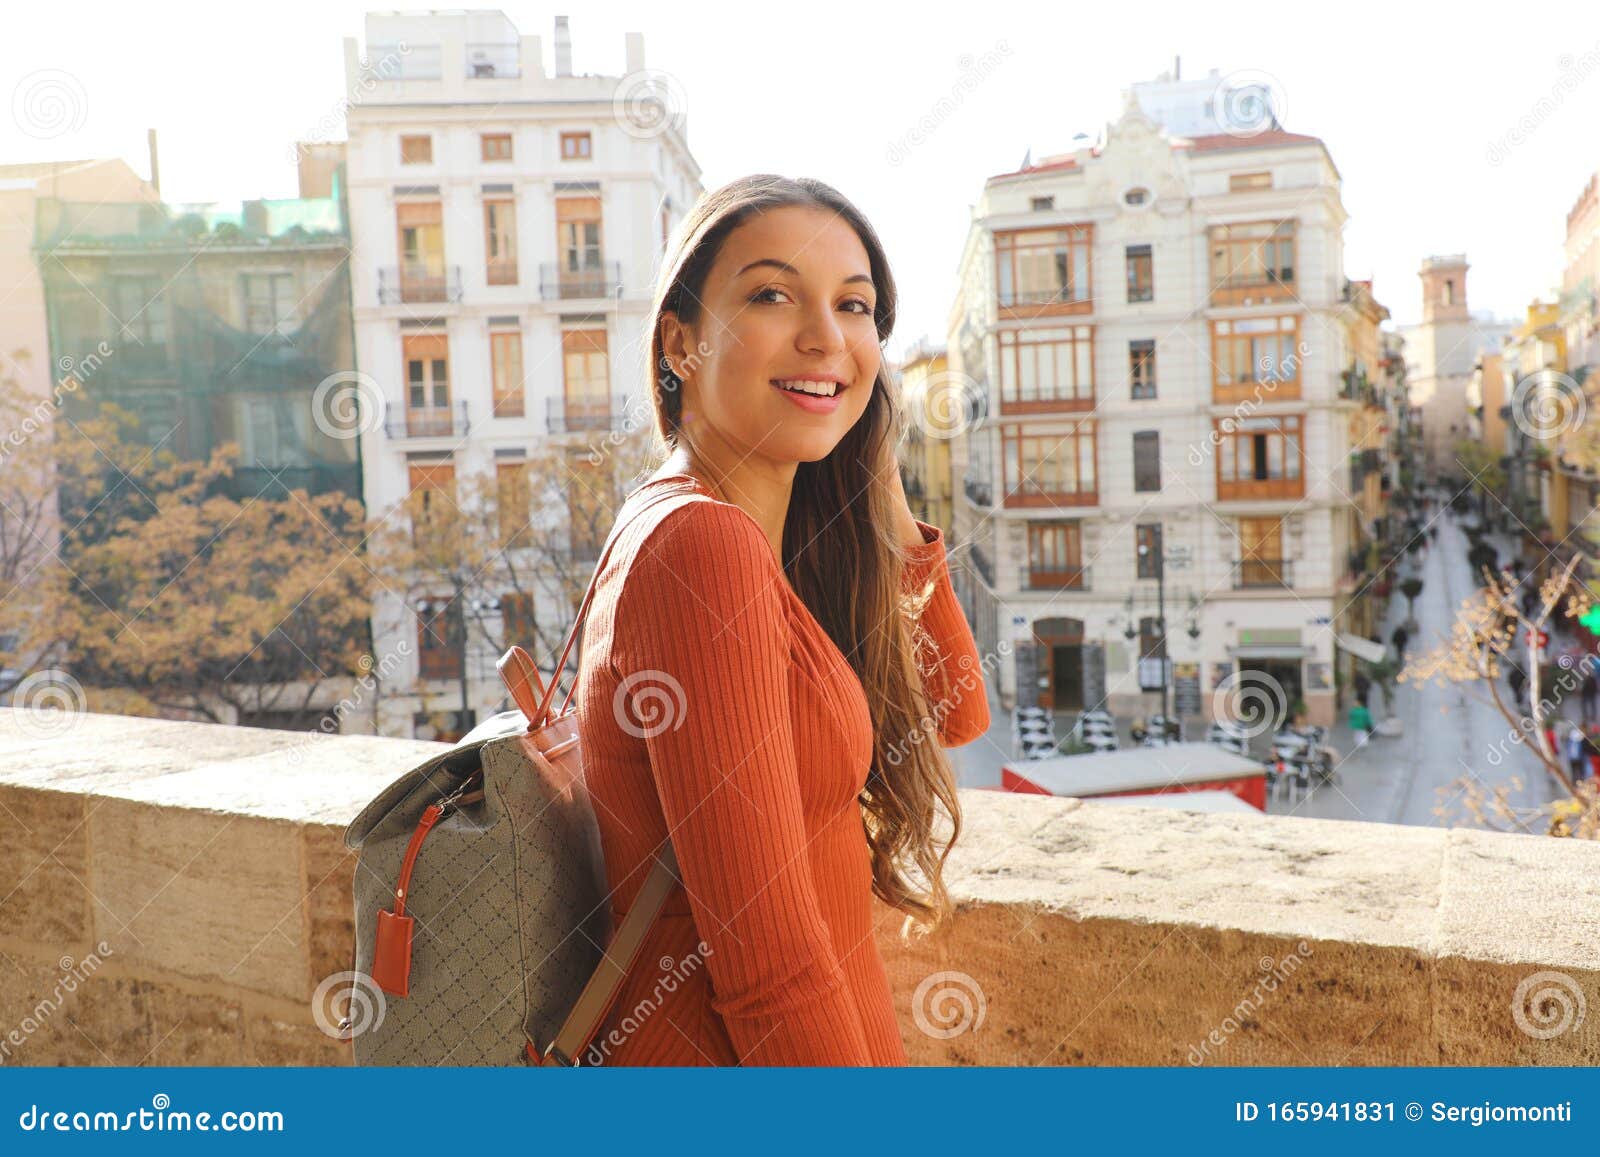 travel girl in spanish